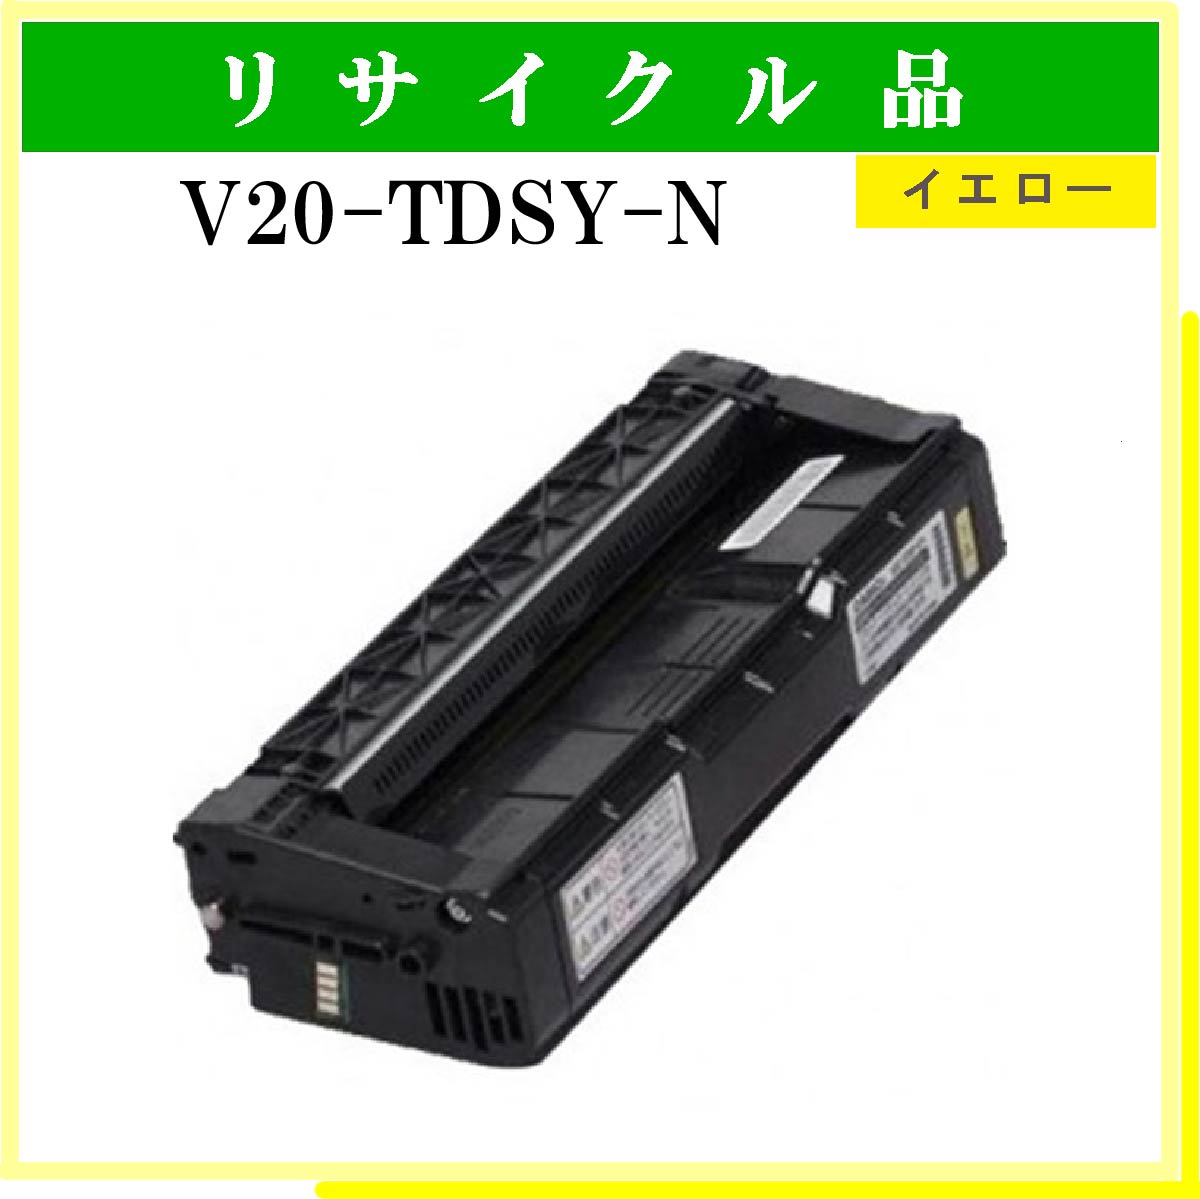 V20-TDSY-N